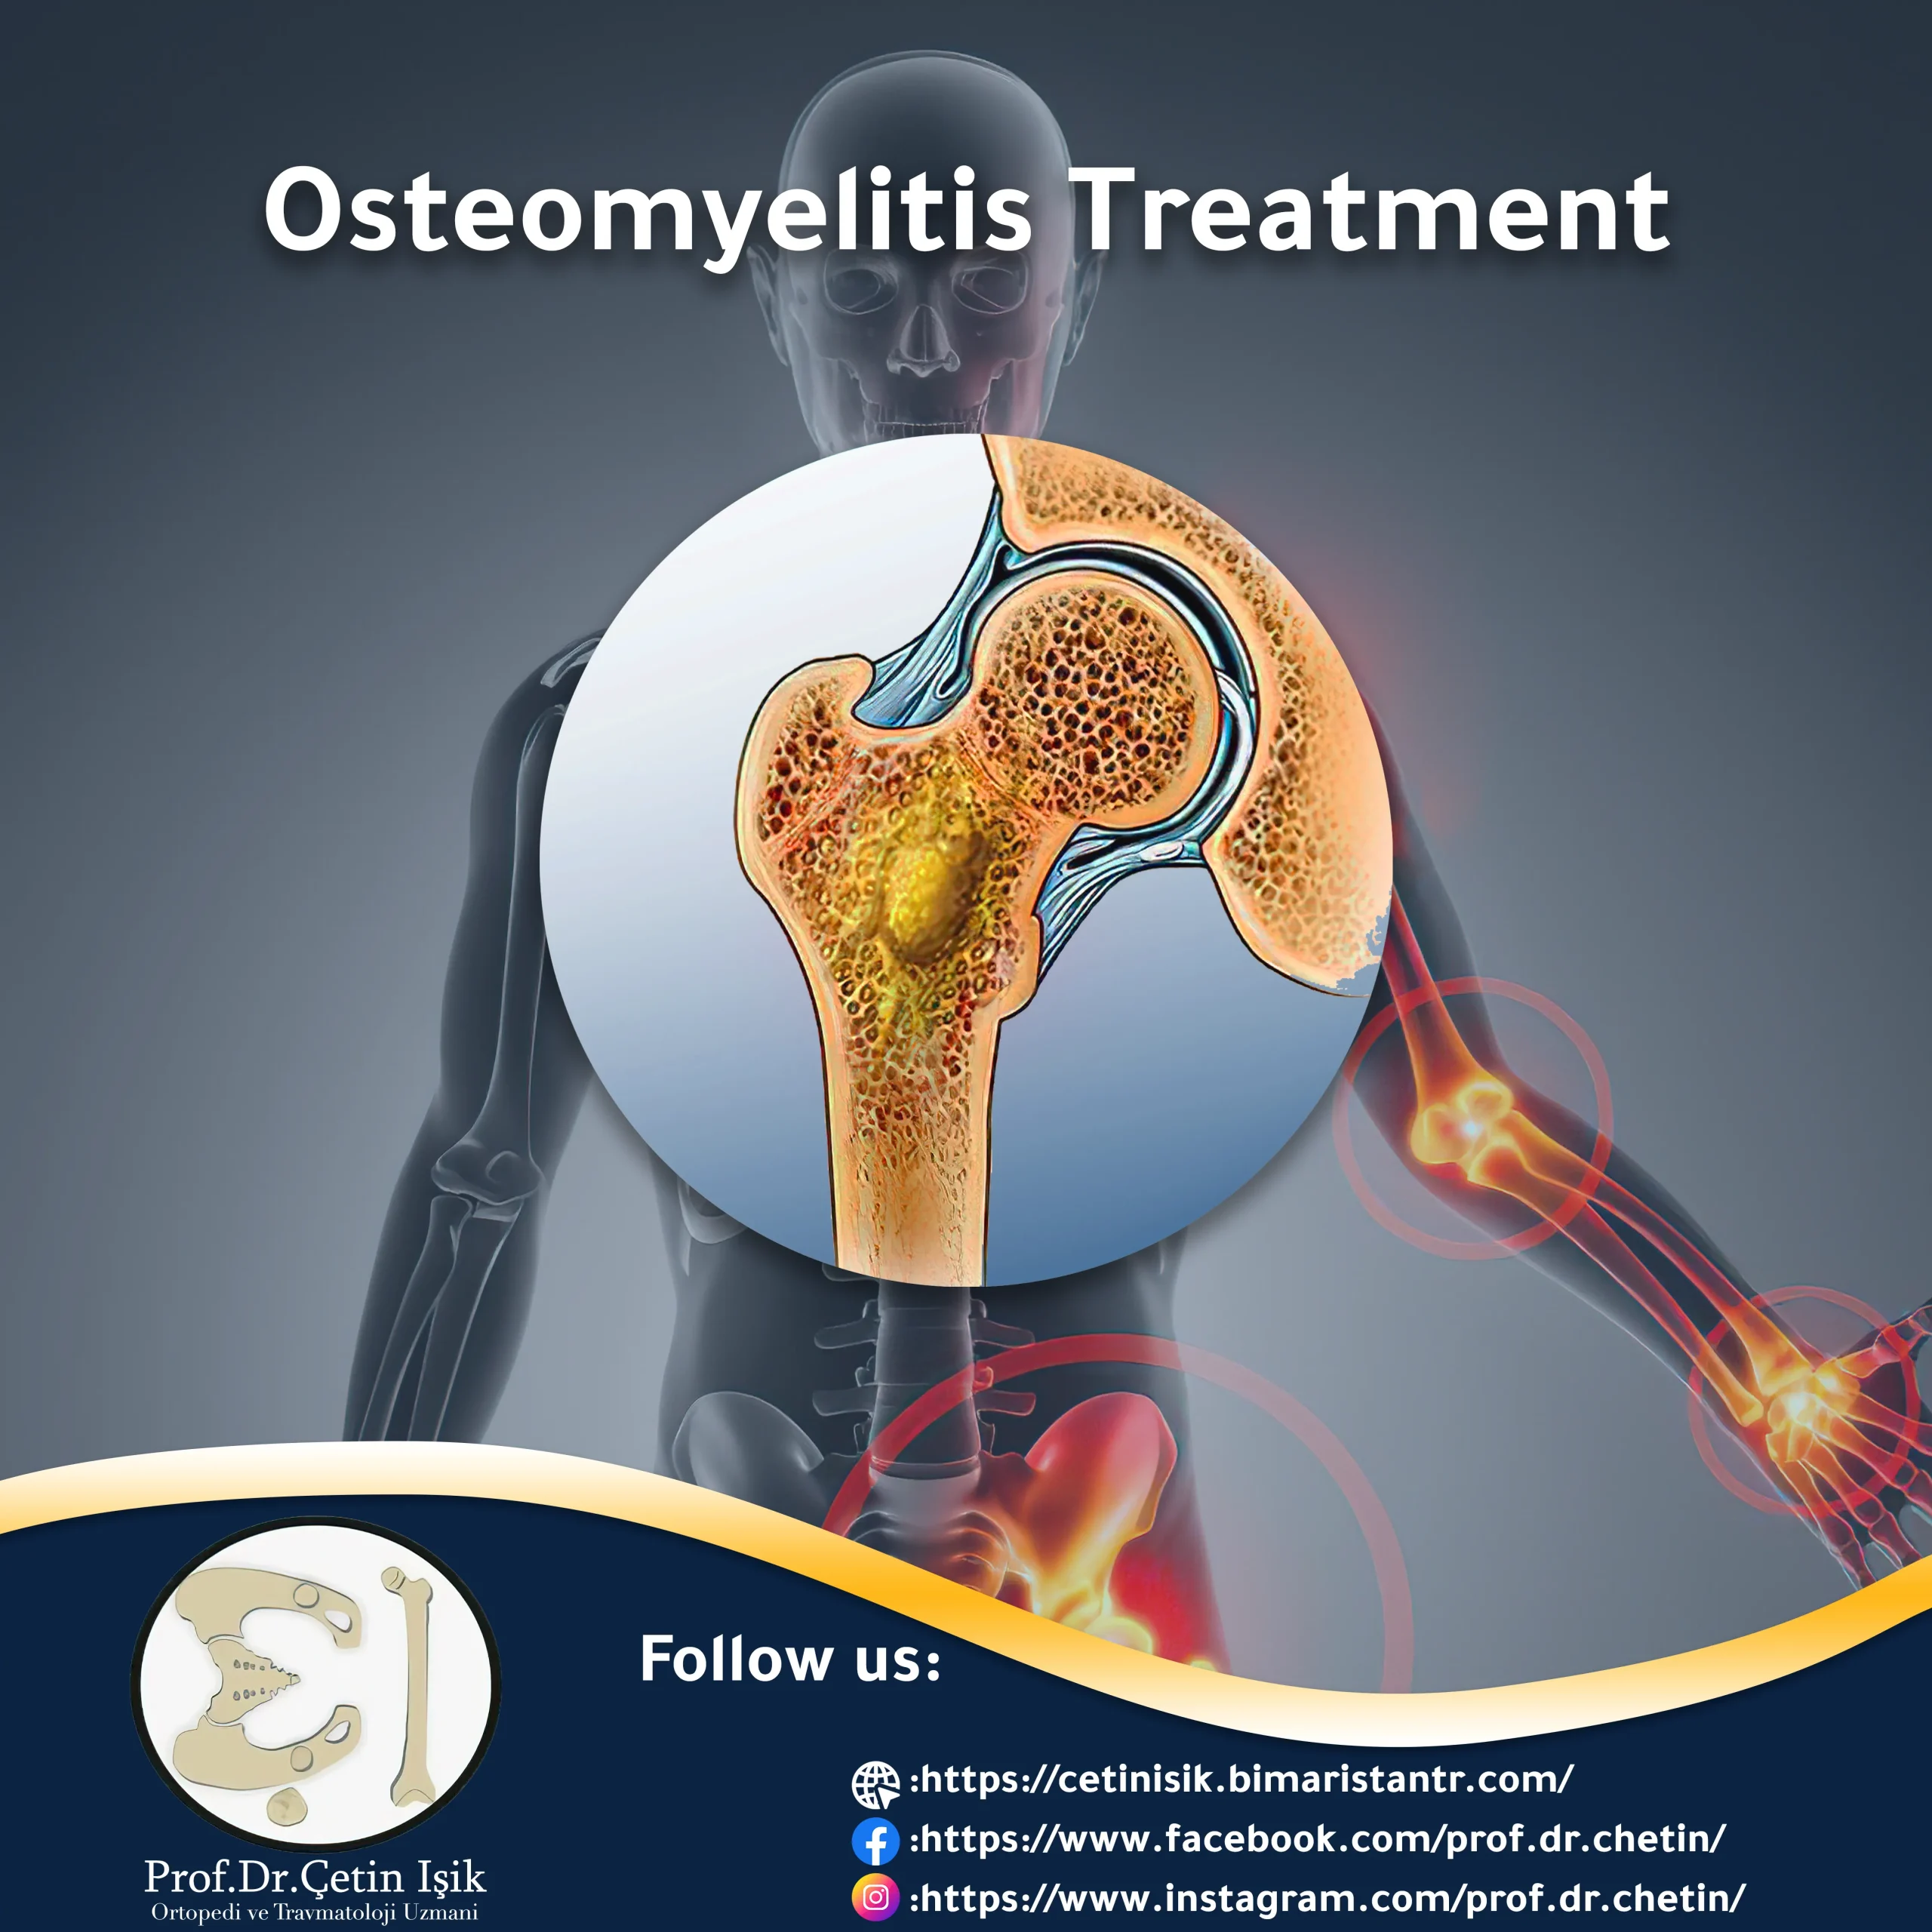 Osteomyelitis treatment